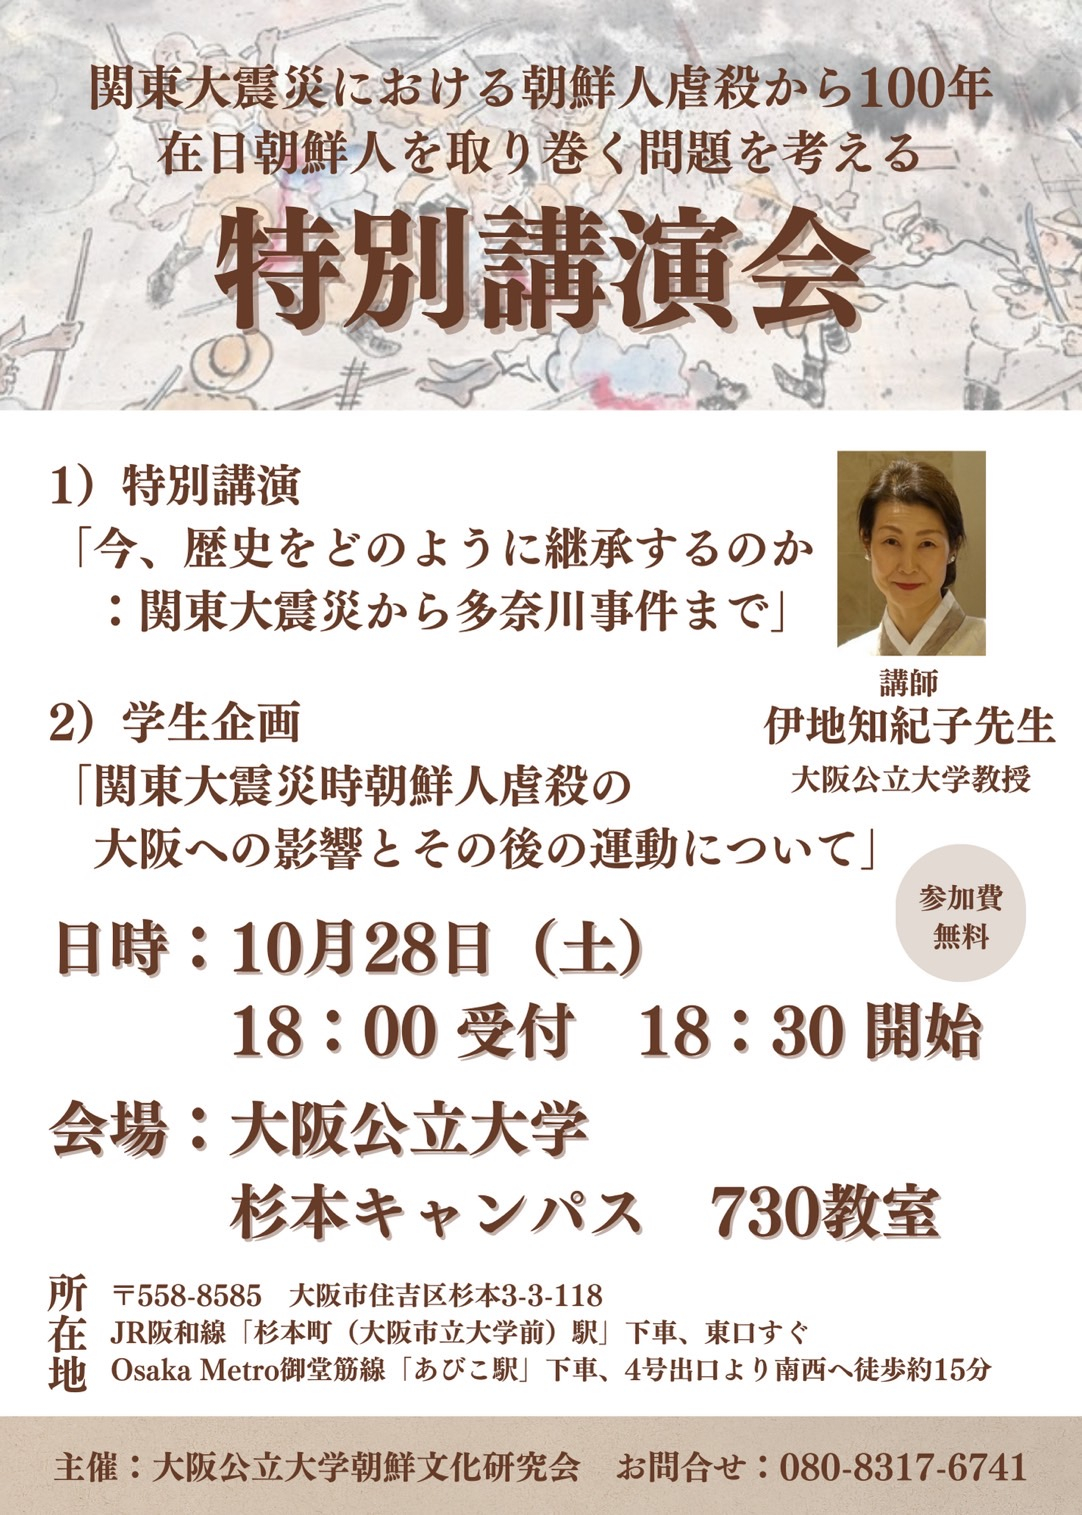 チラシ表 関東大震災における朝鮮人虐殺から100年 在日朝鮮人を取り巻く問題を考える特別講演会